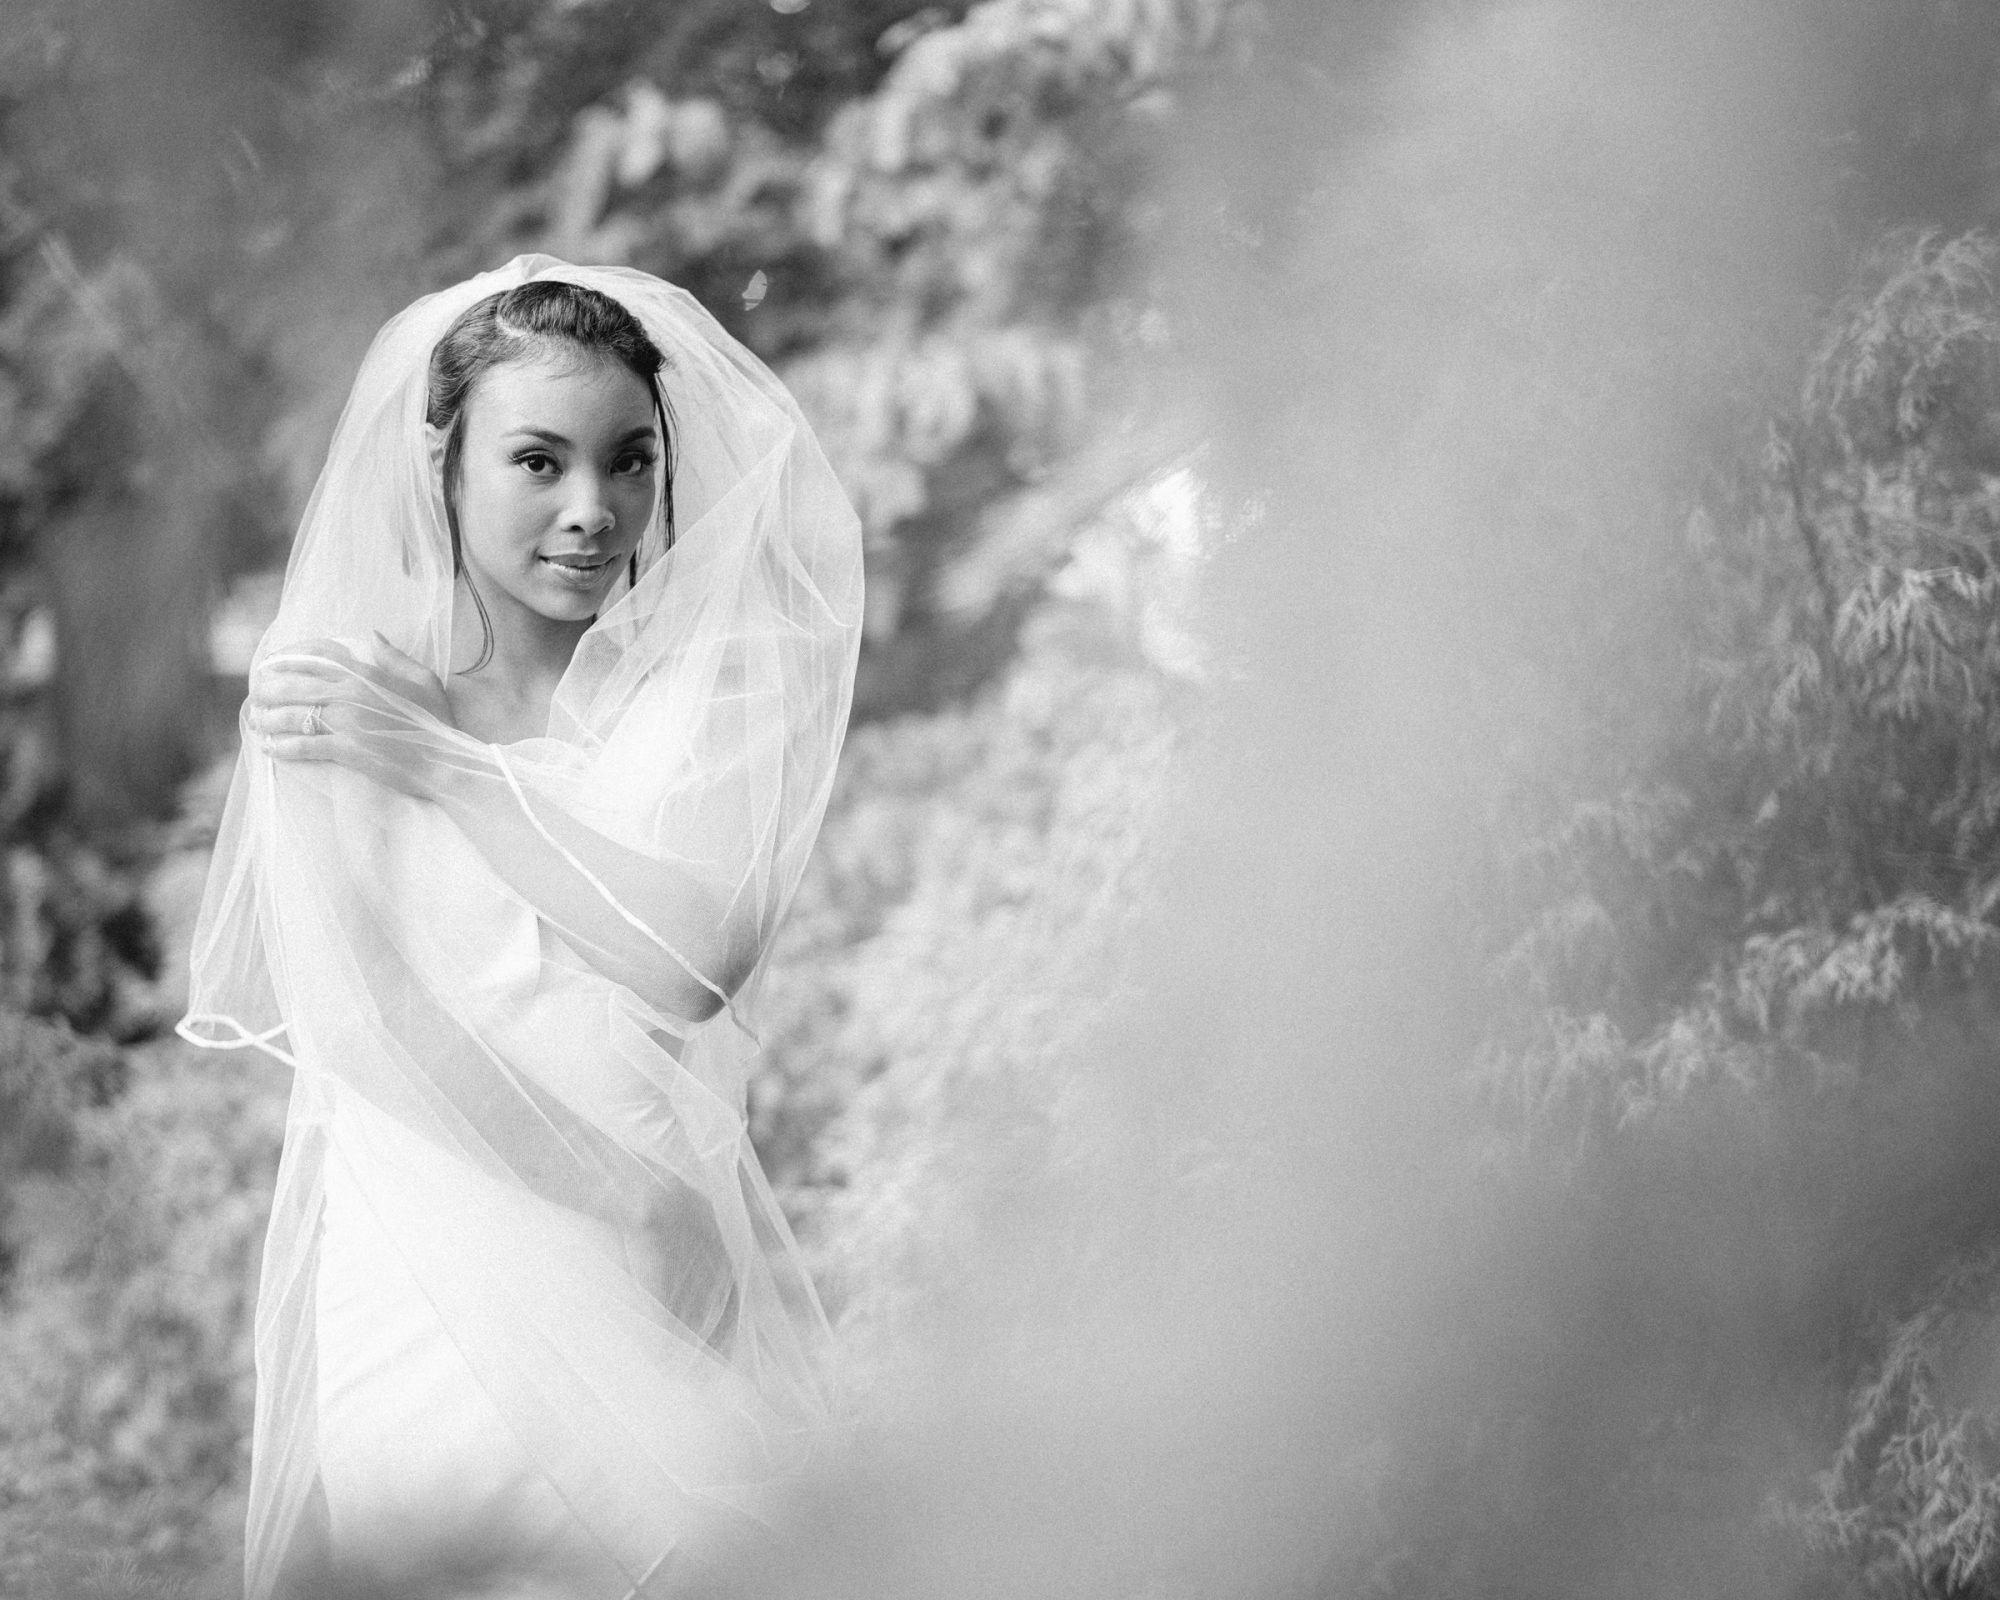 umstead weddings – kayla’s bridal session